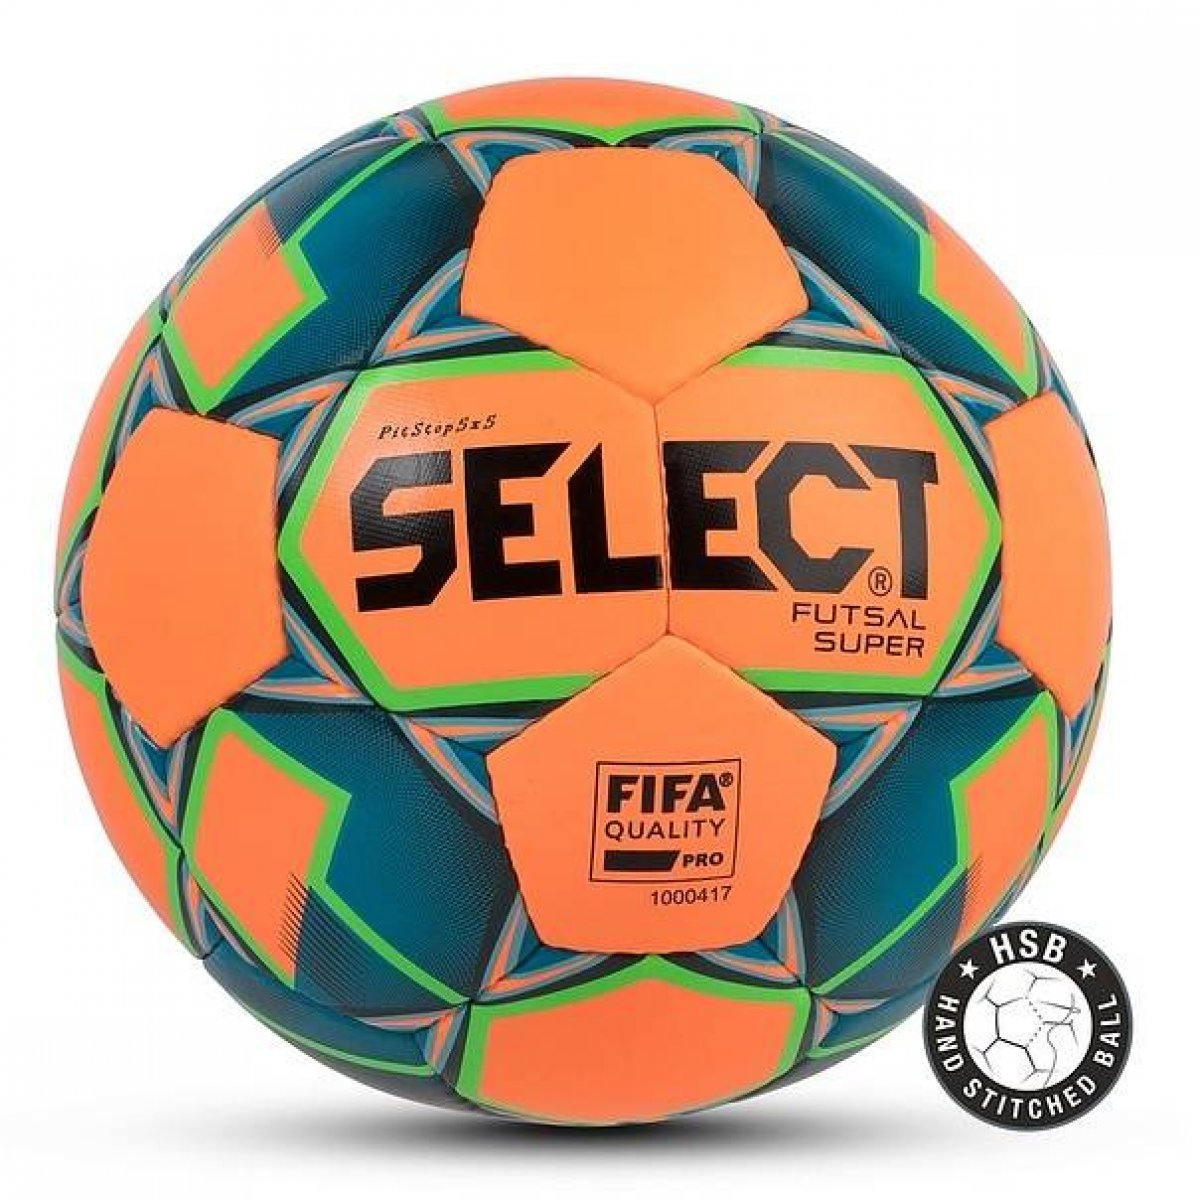 Футзальный мяч Select Futsal Super Fifa 62 №4 orange